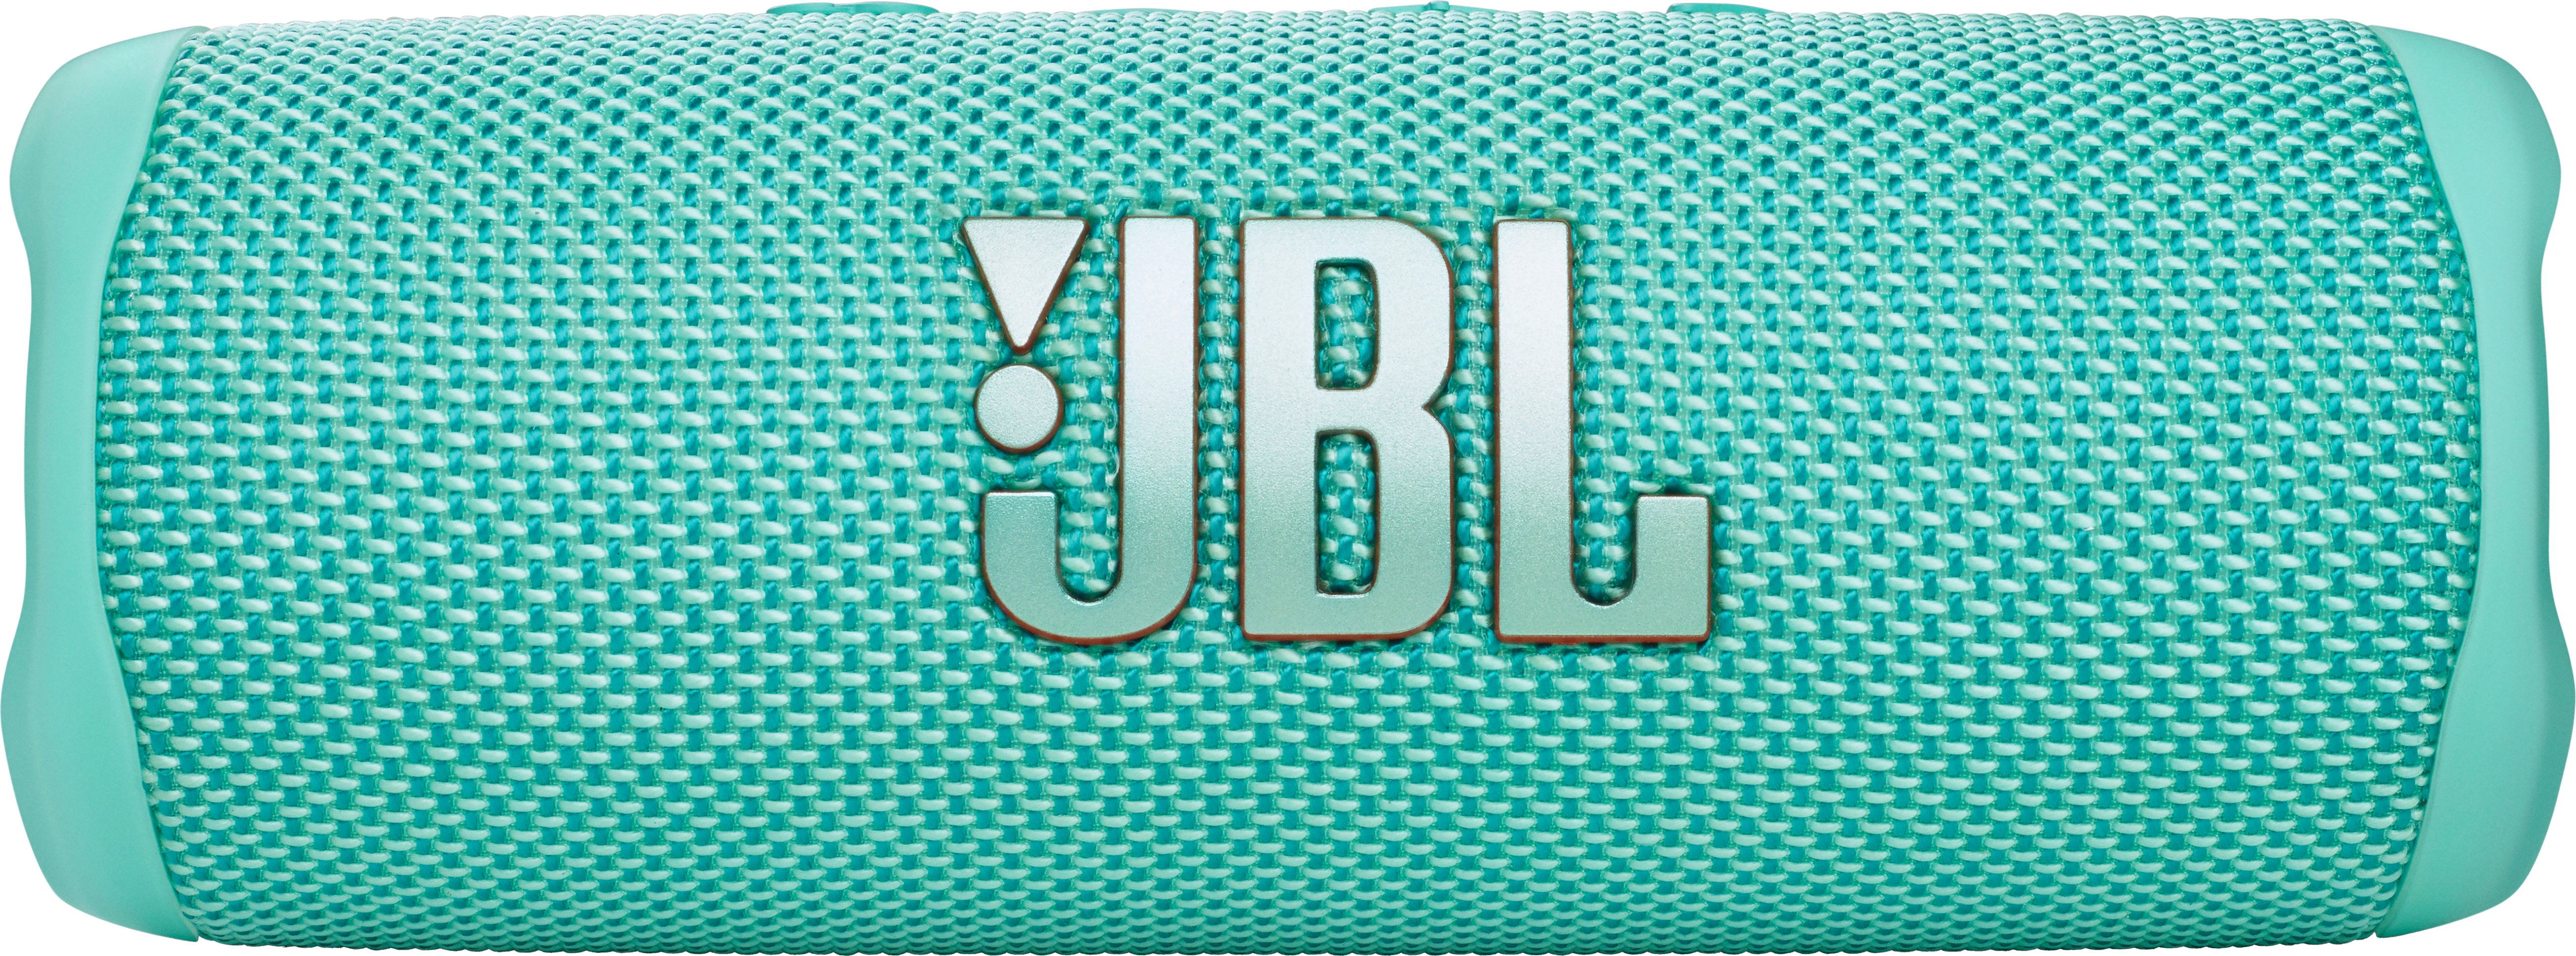 JBL FLIP6 Portable - Teal Speaker Buy Best JBLFLIP6TEALAM Waterproof